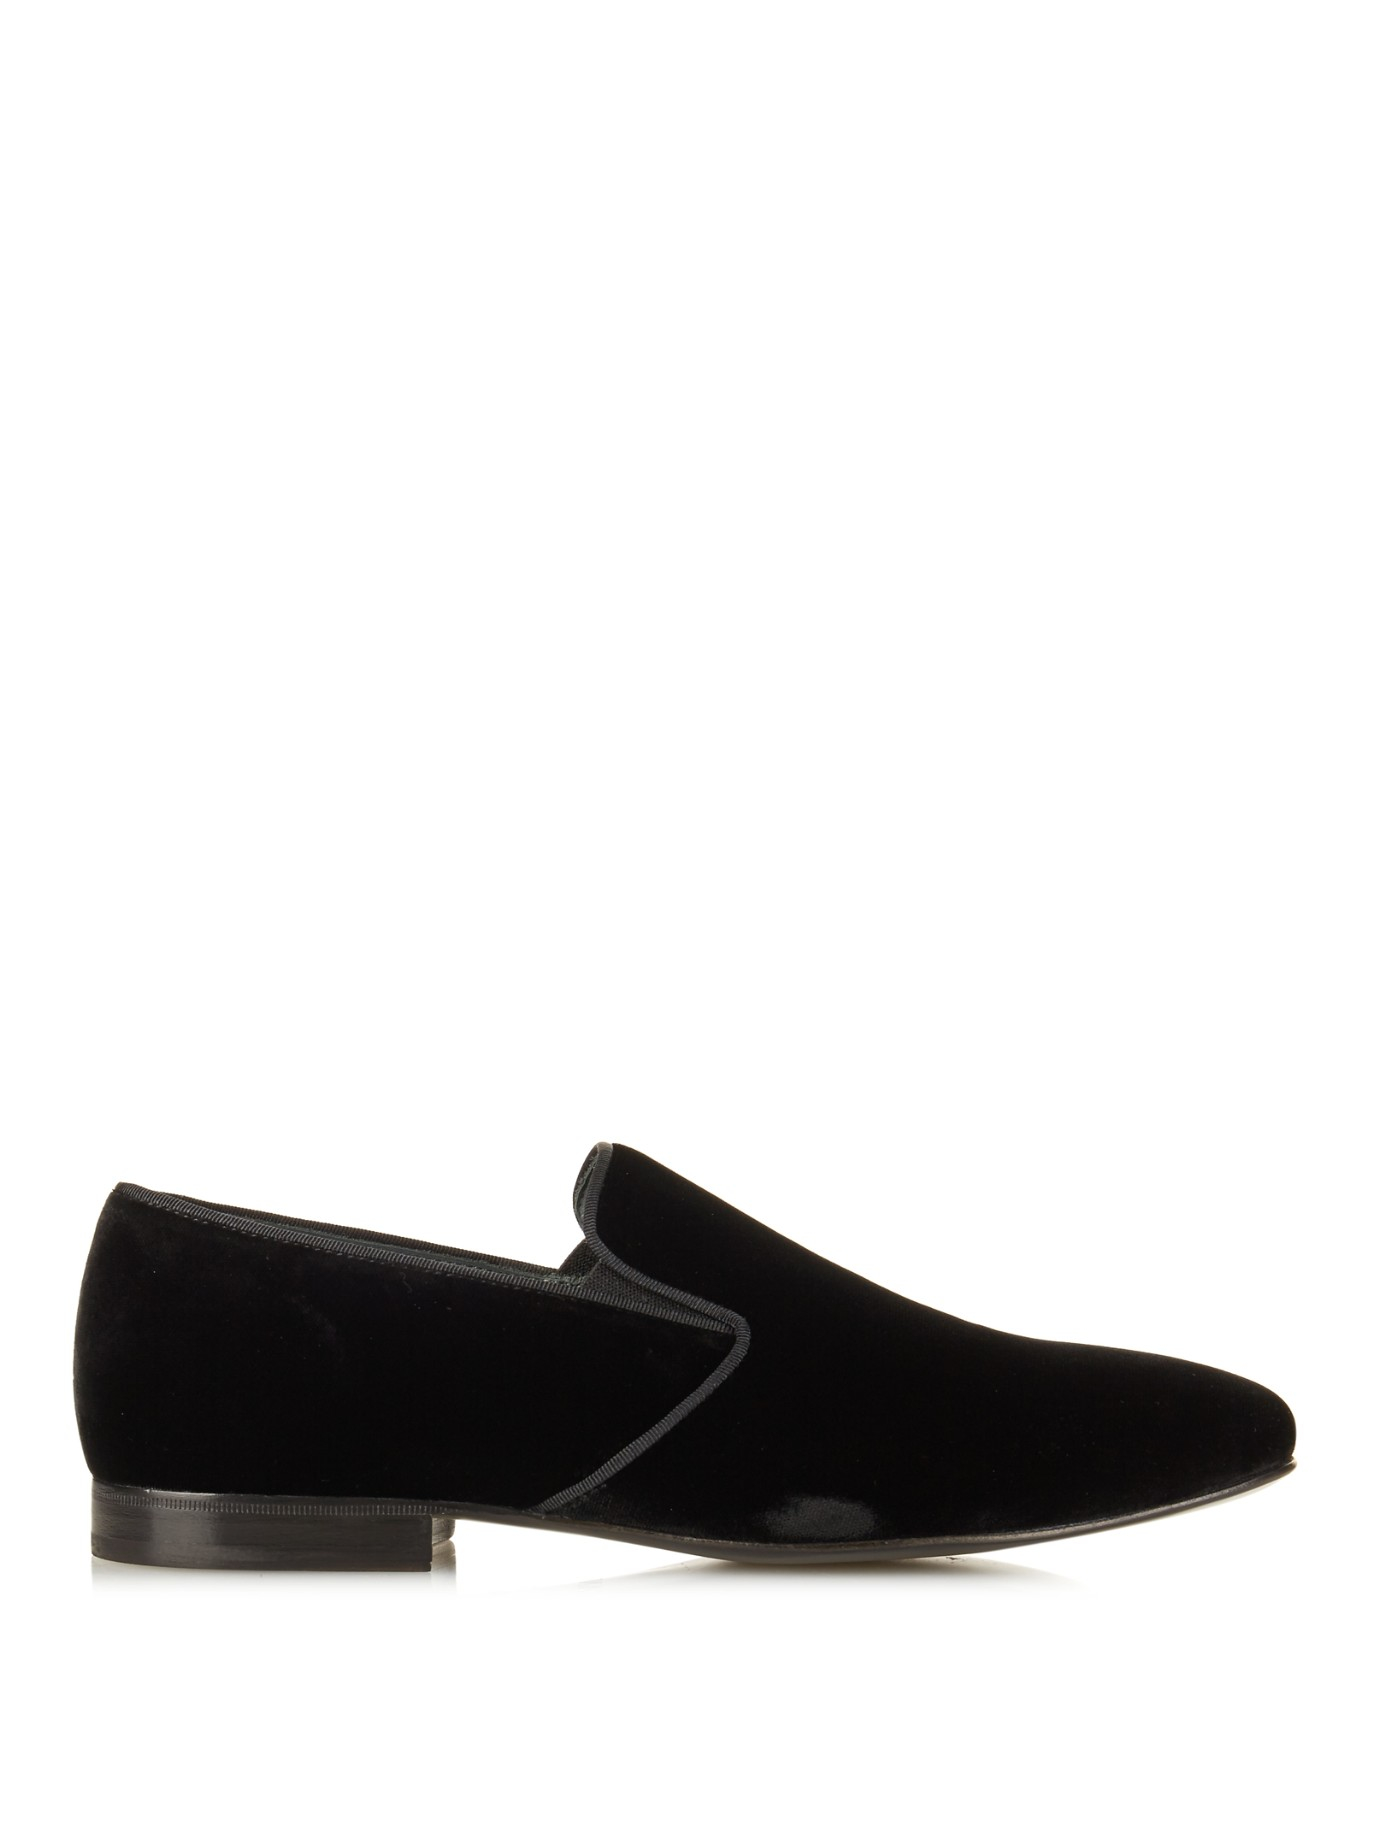 Lanvin Velvet Loafers in Black for Men - Lyst